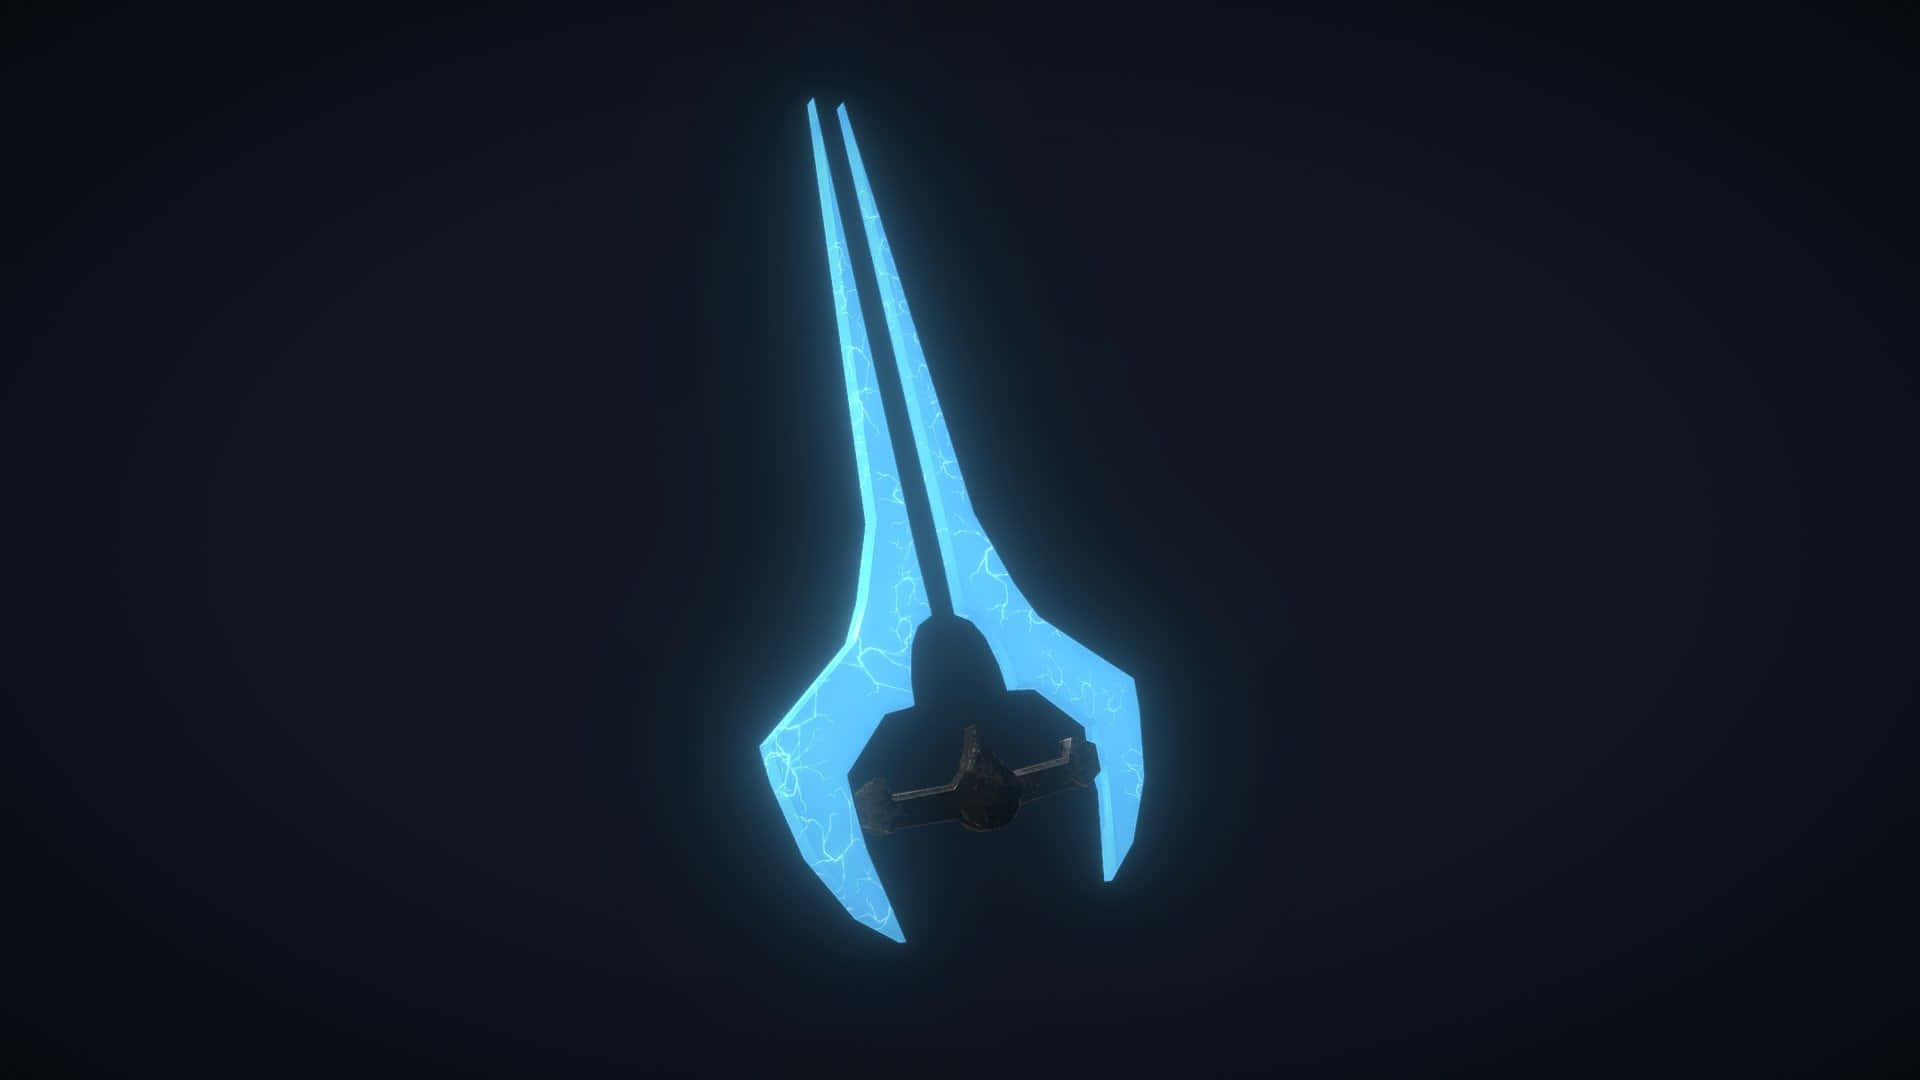 A fierce Halo Energy Sword wielded by a Spartan Wallpaper